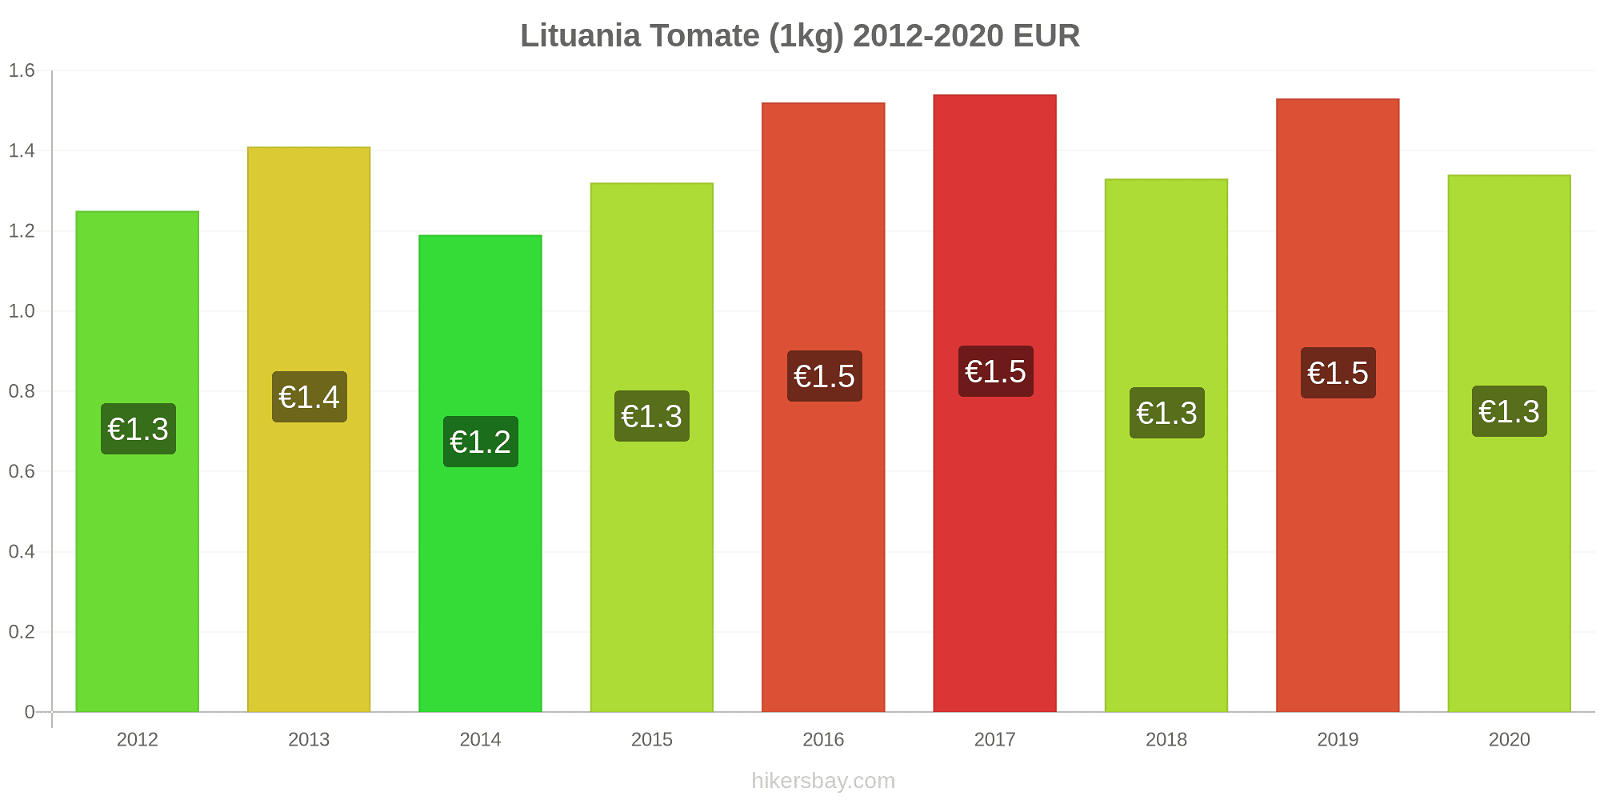 Lituania cambios de precios Tomate (1kg) hikersbay.com